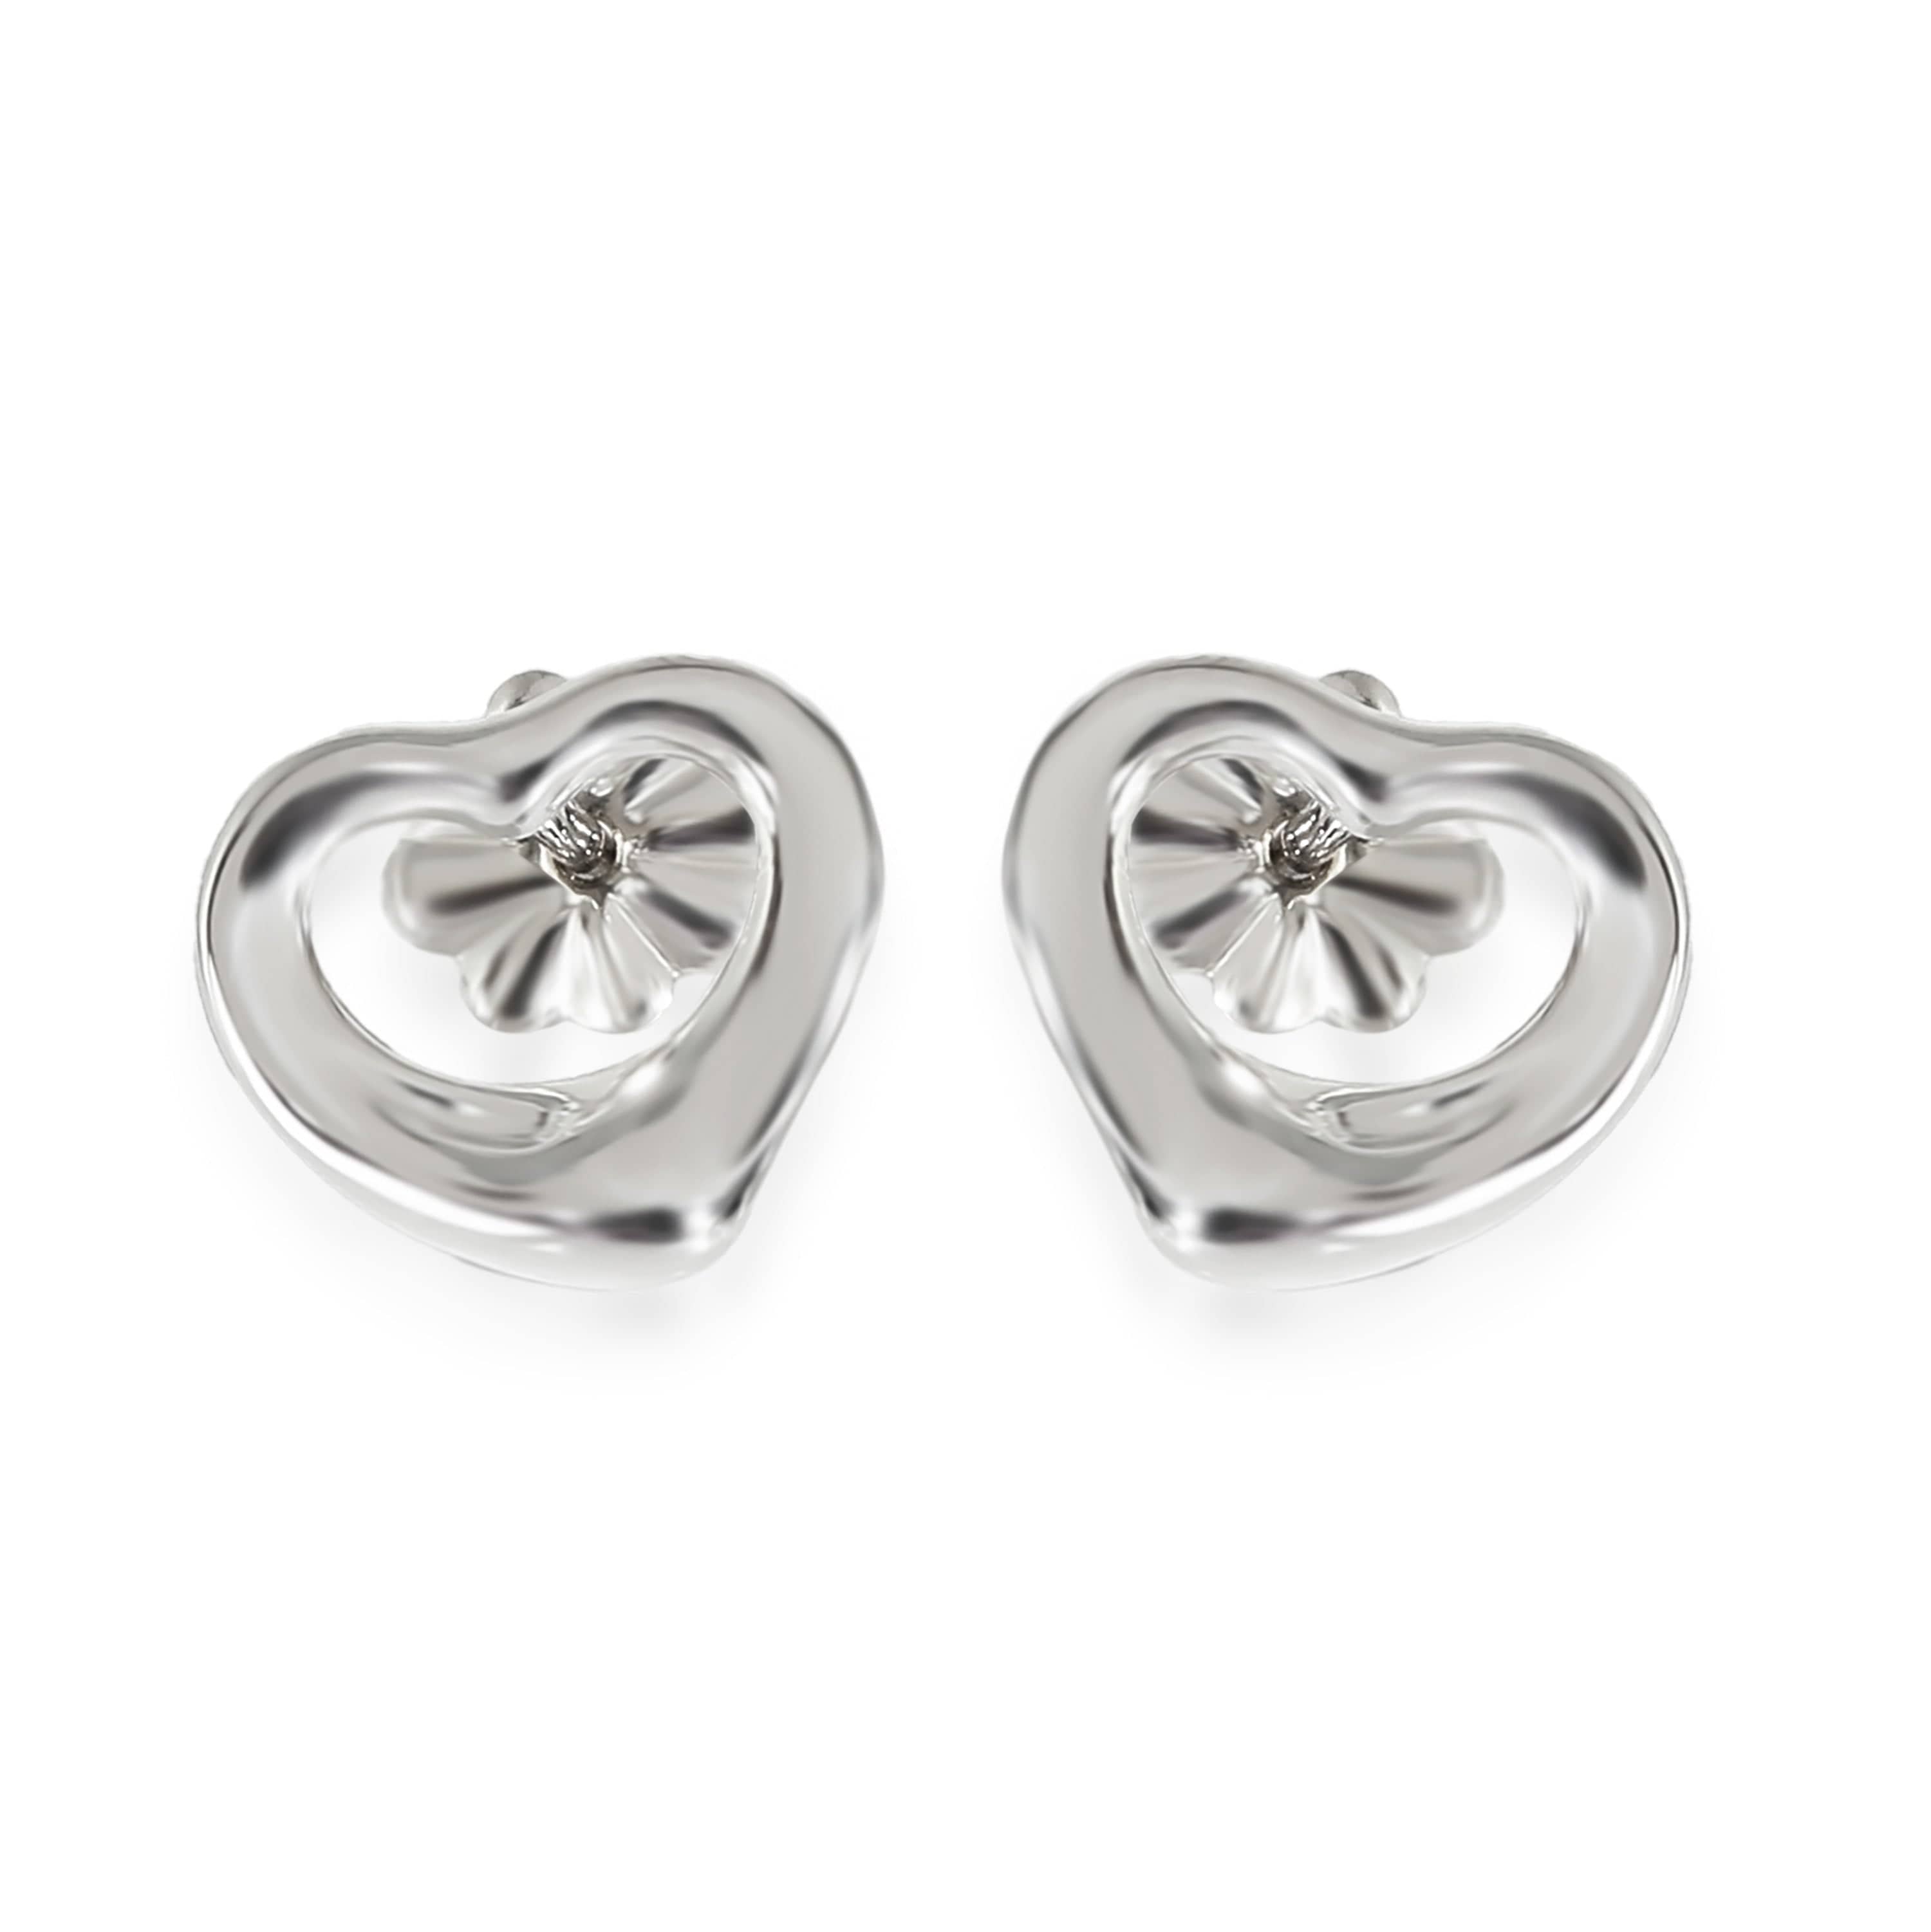 Tiffany & Co. Tiffany & Co Elsa Peretti Open Heart Stud Earring in Sterling Silver